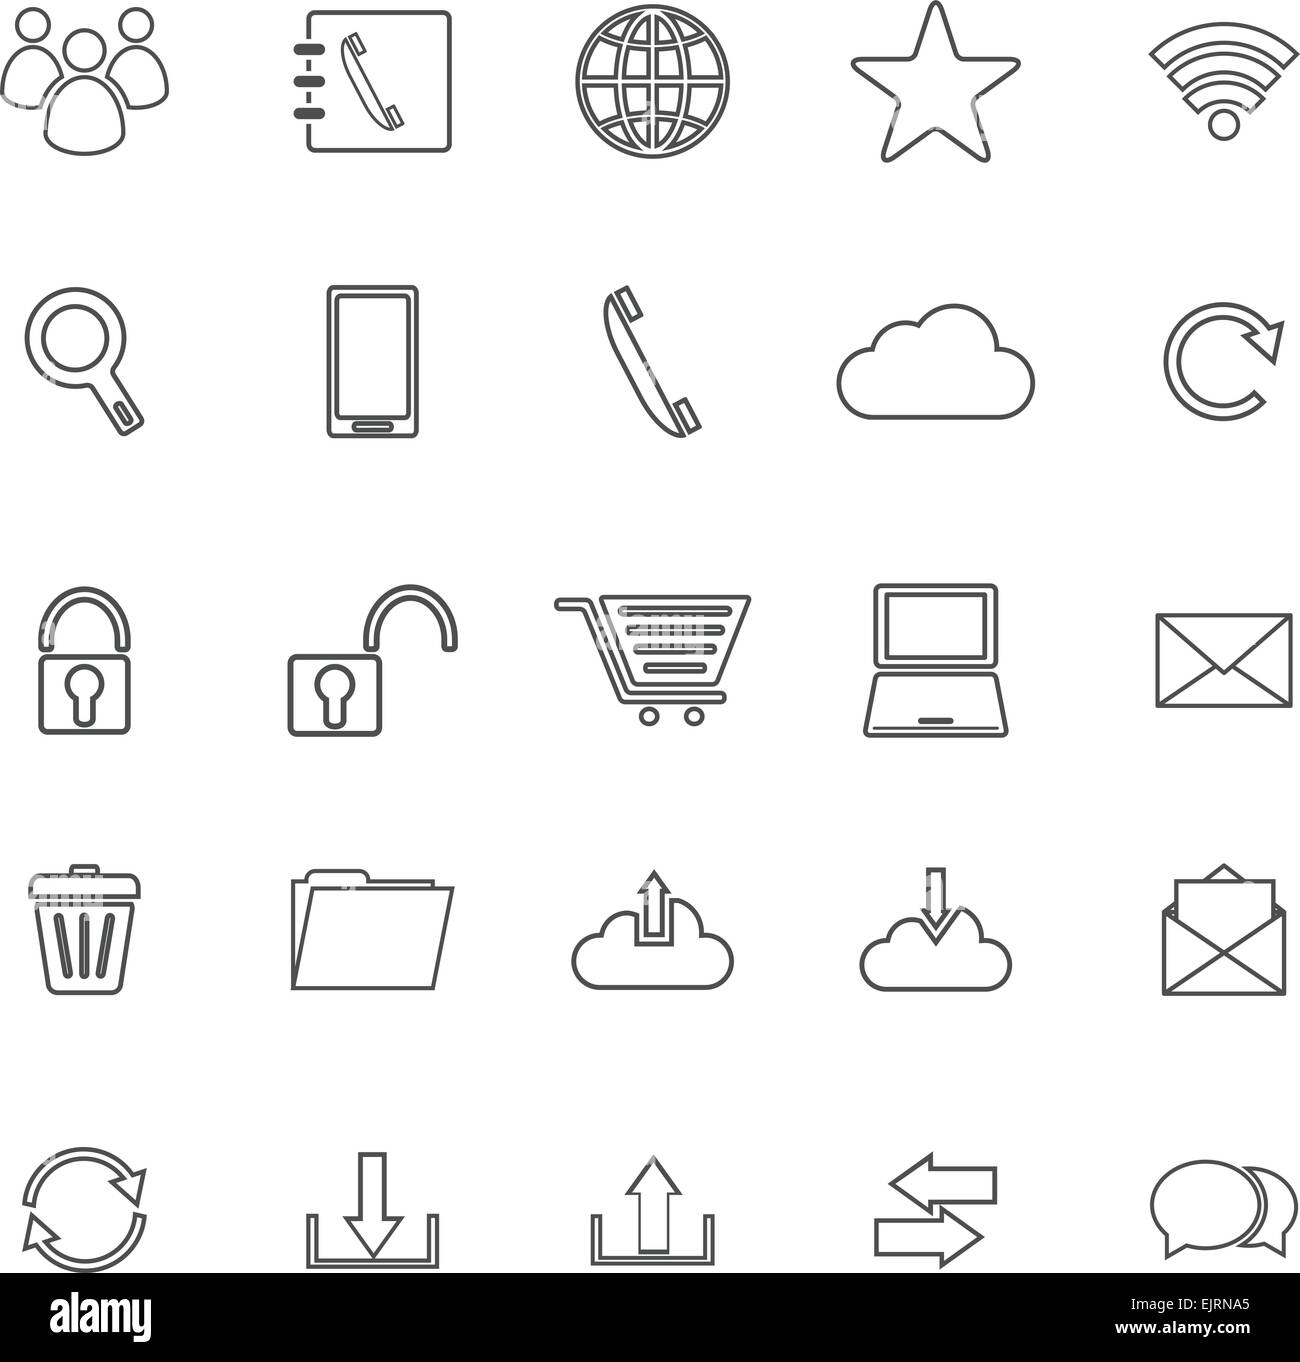 Linea di comunicazione le icone su sfondo bianco, vettore di stock Illustrazione Vettoriale